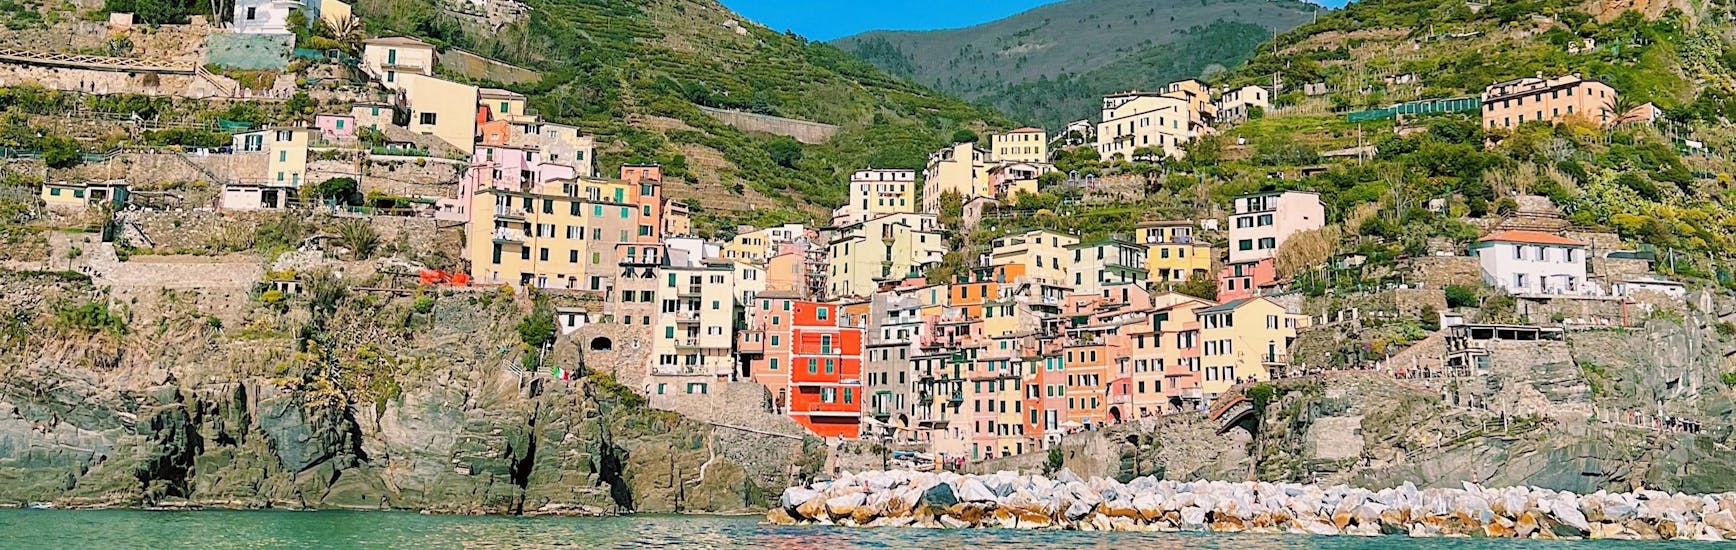 Riomaggiore visto dal mare durante una gita in veliero da La Spezia alle Cinque Terre con pranzo con Velagiovane.